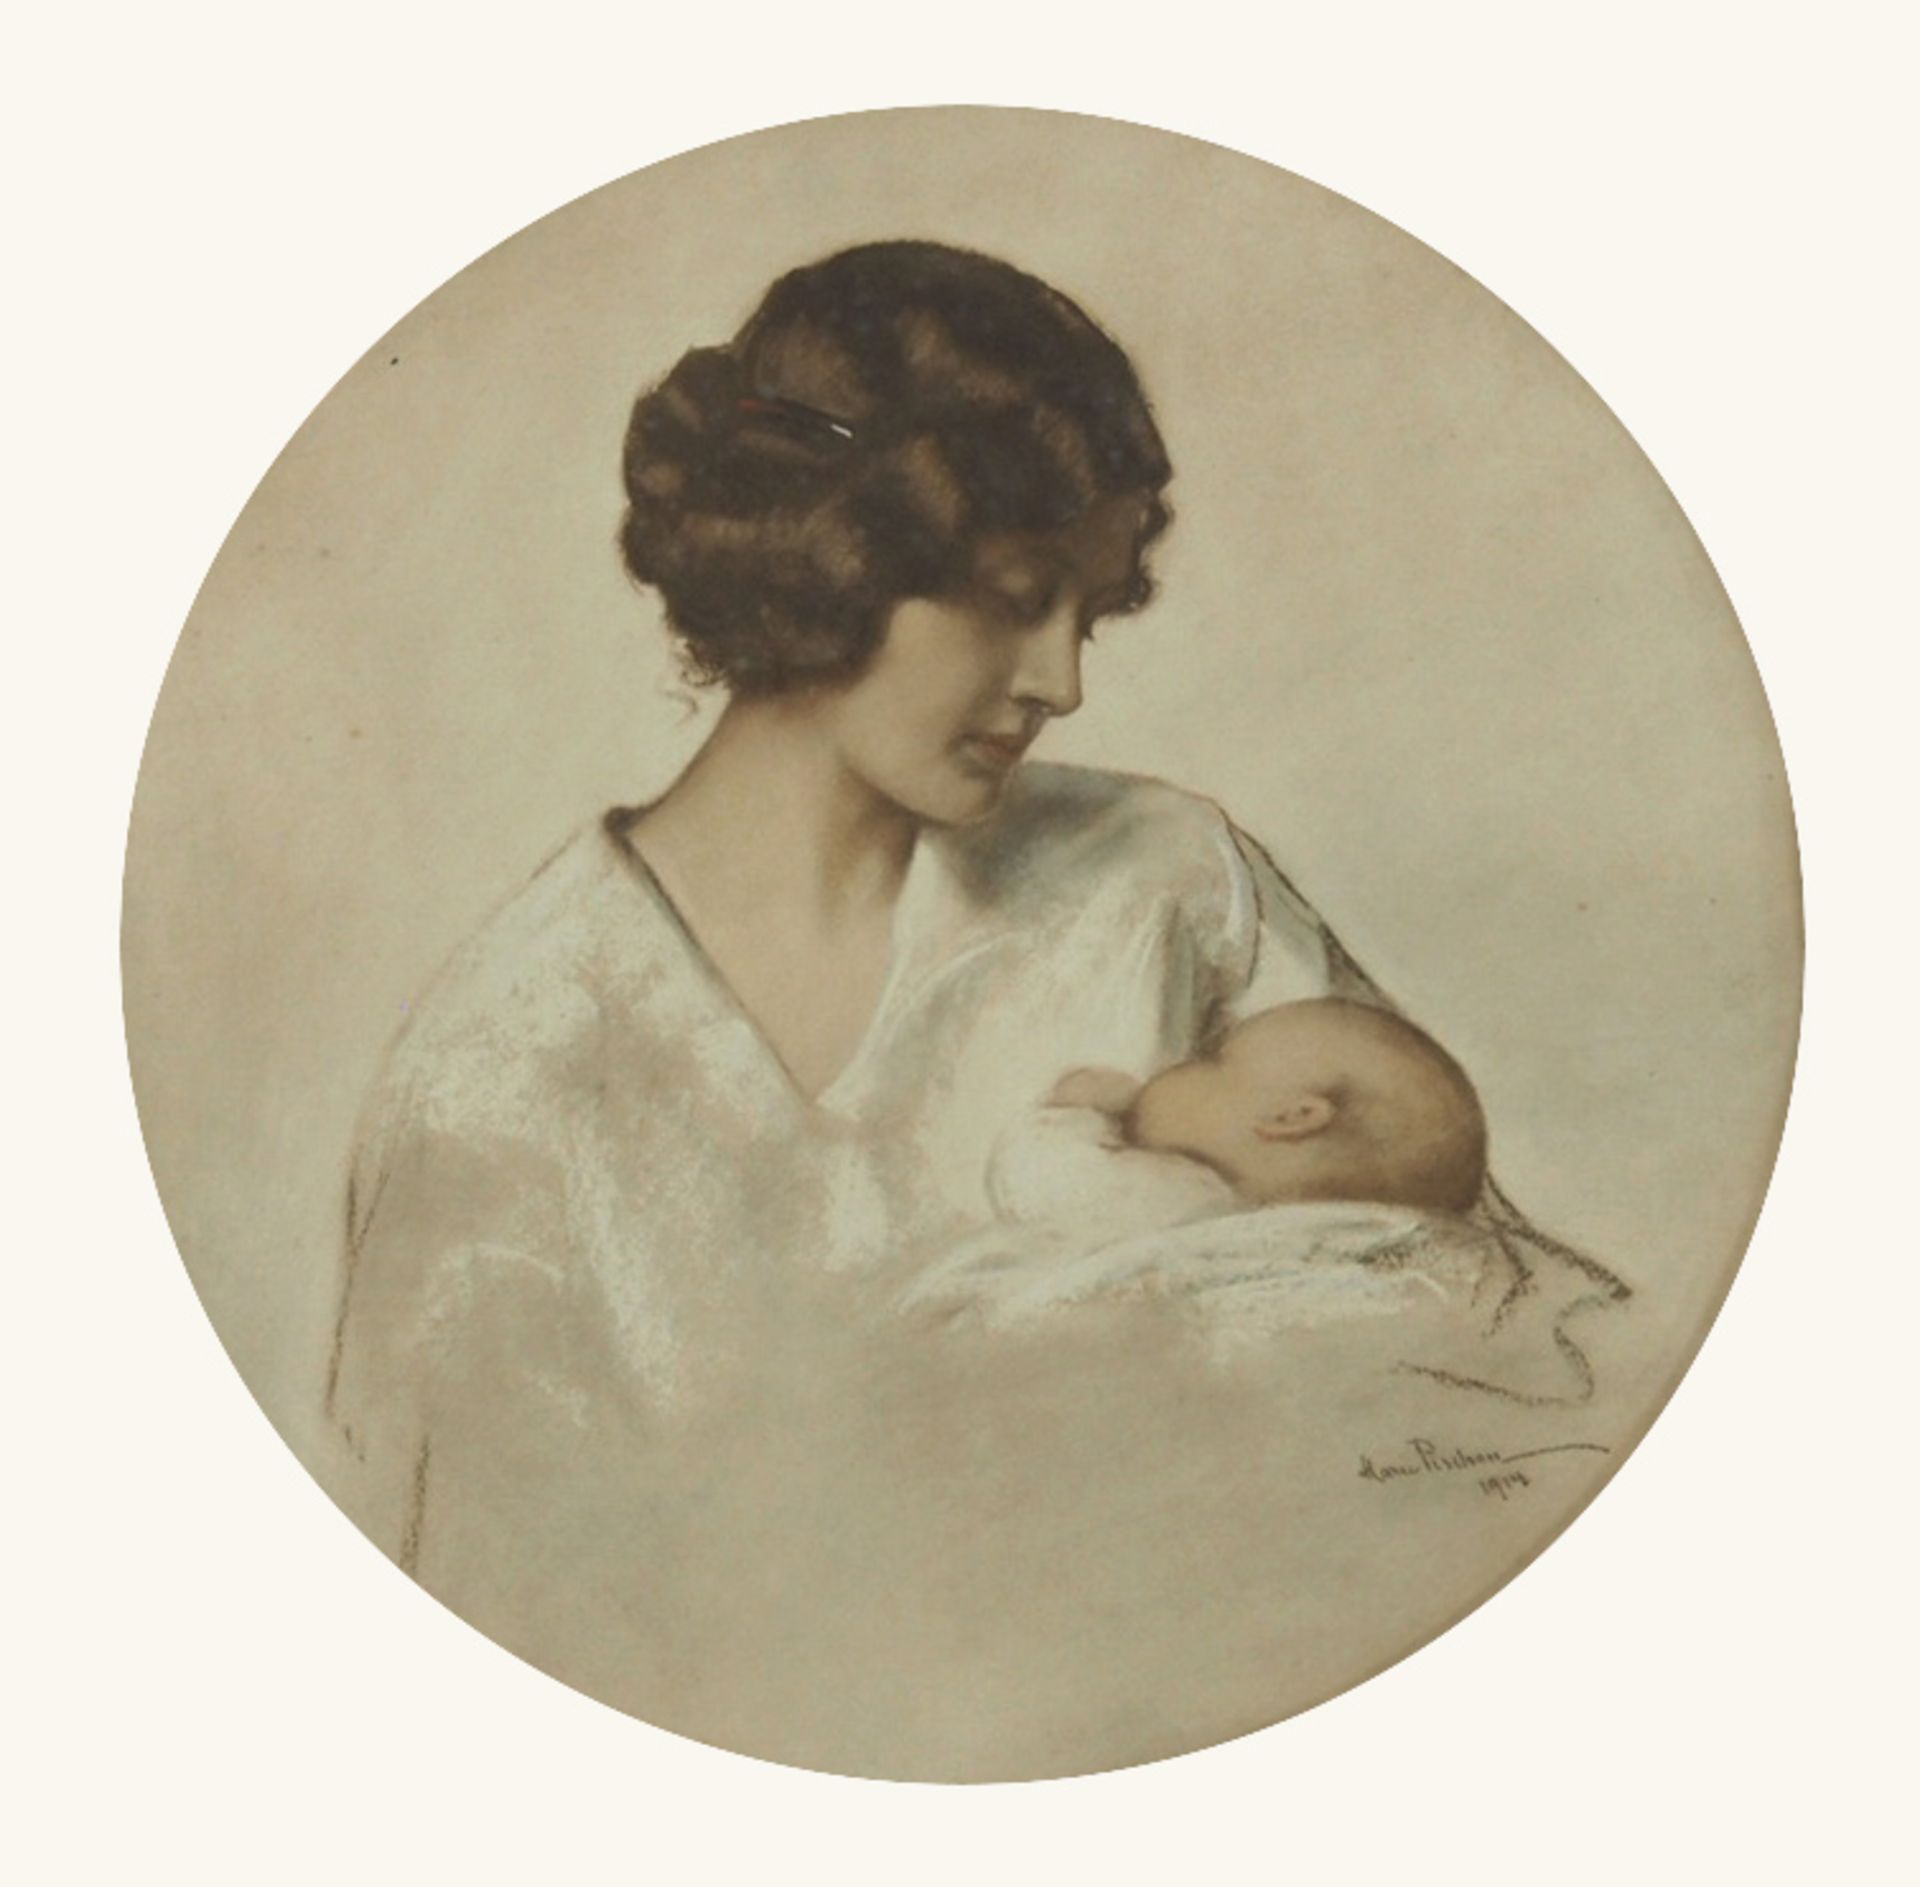 PISCHON, Marie1856-1928Mutter mit KindFarbkreiden, Deckweiß auf Papier, signiert und datiert 1914